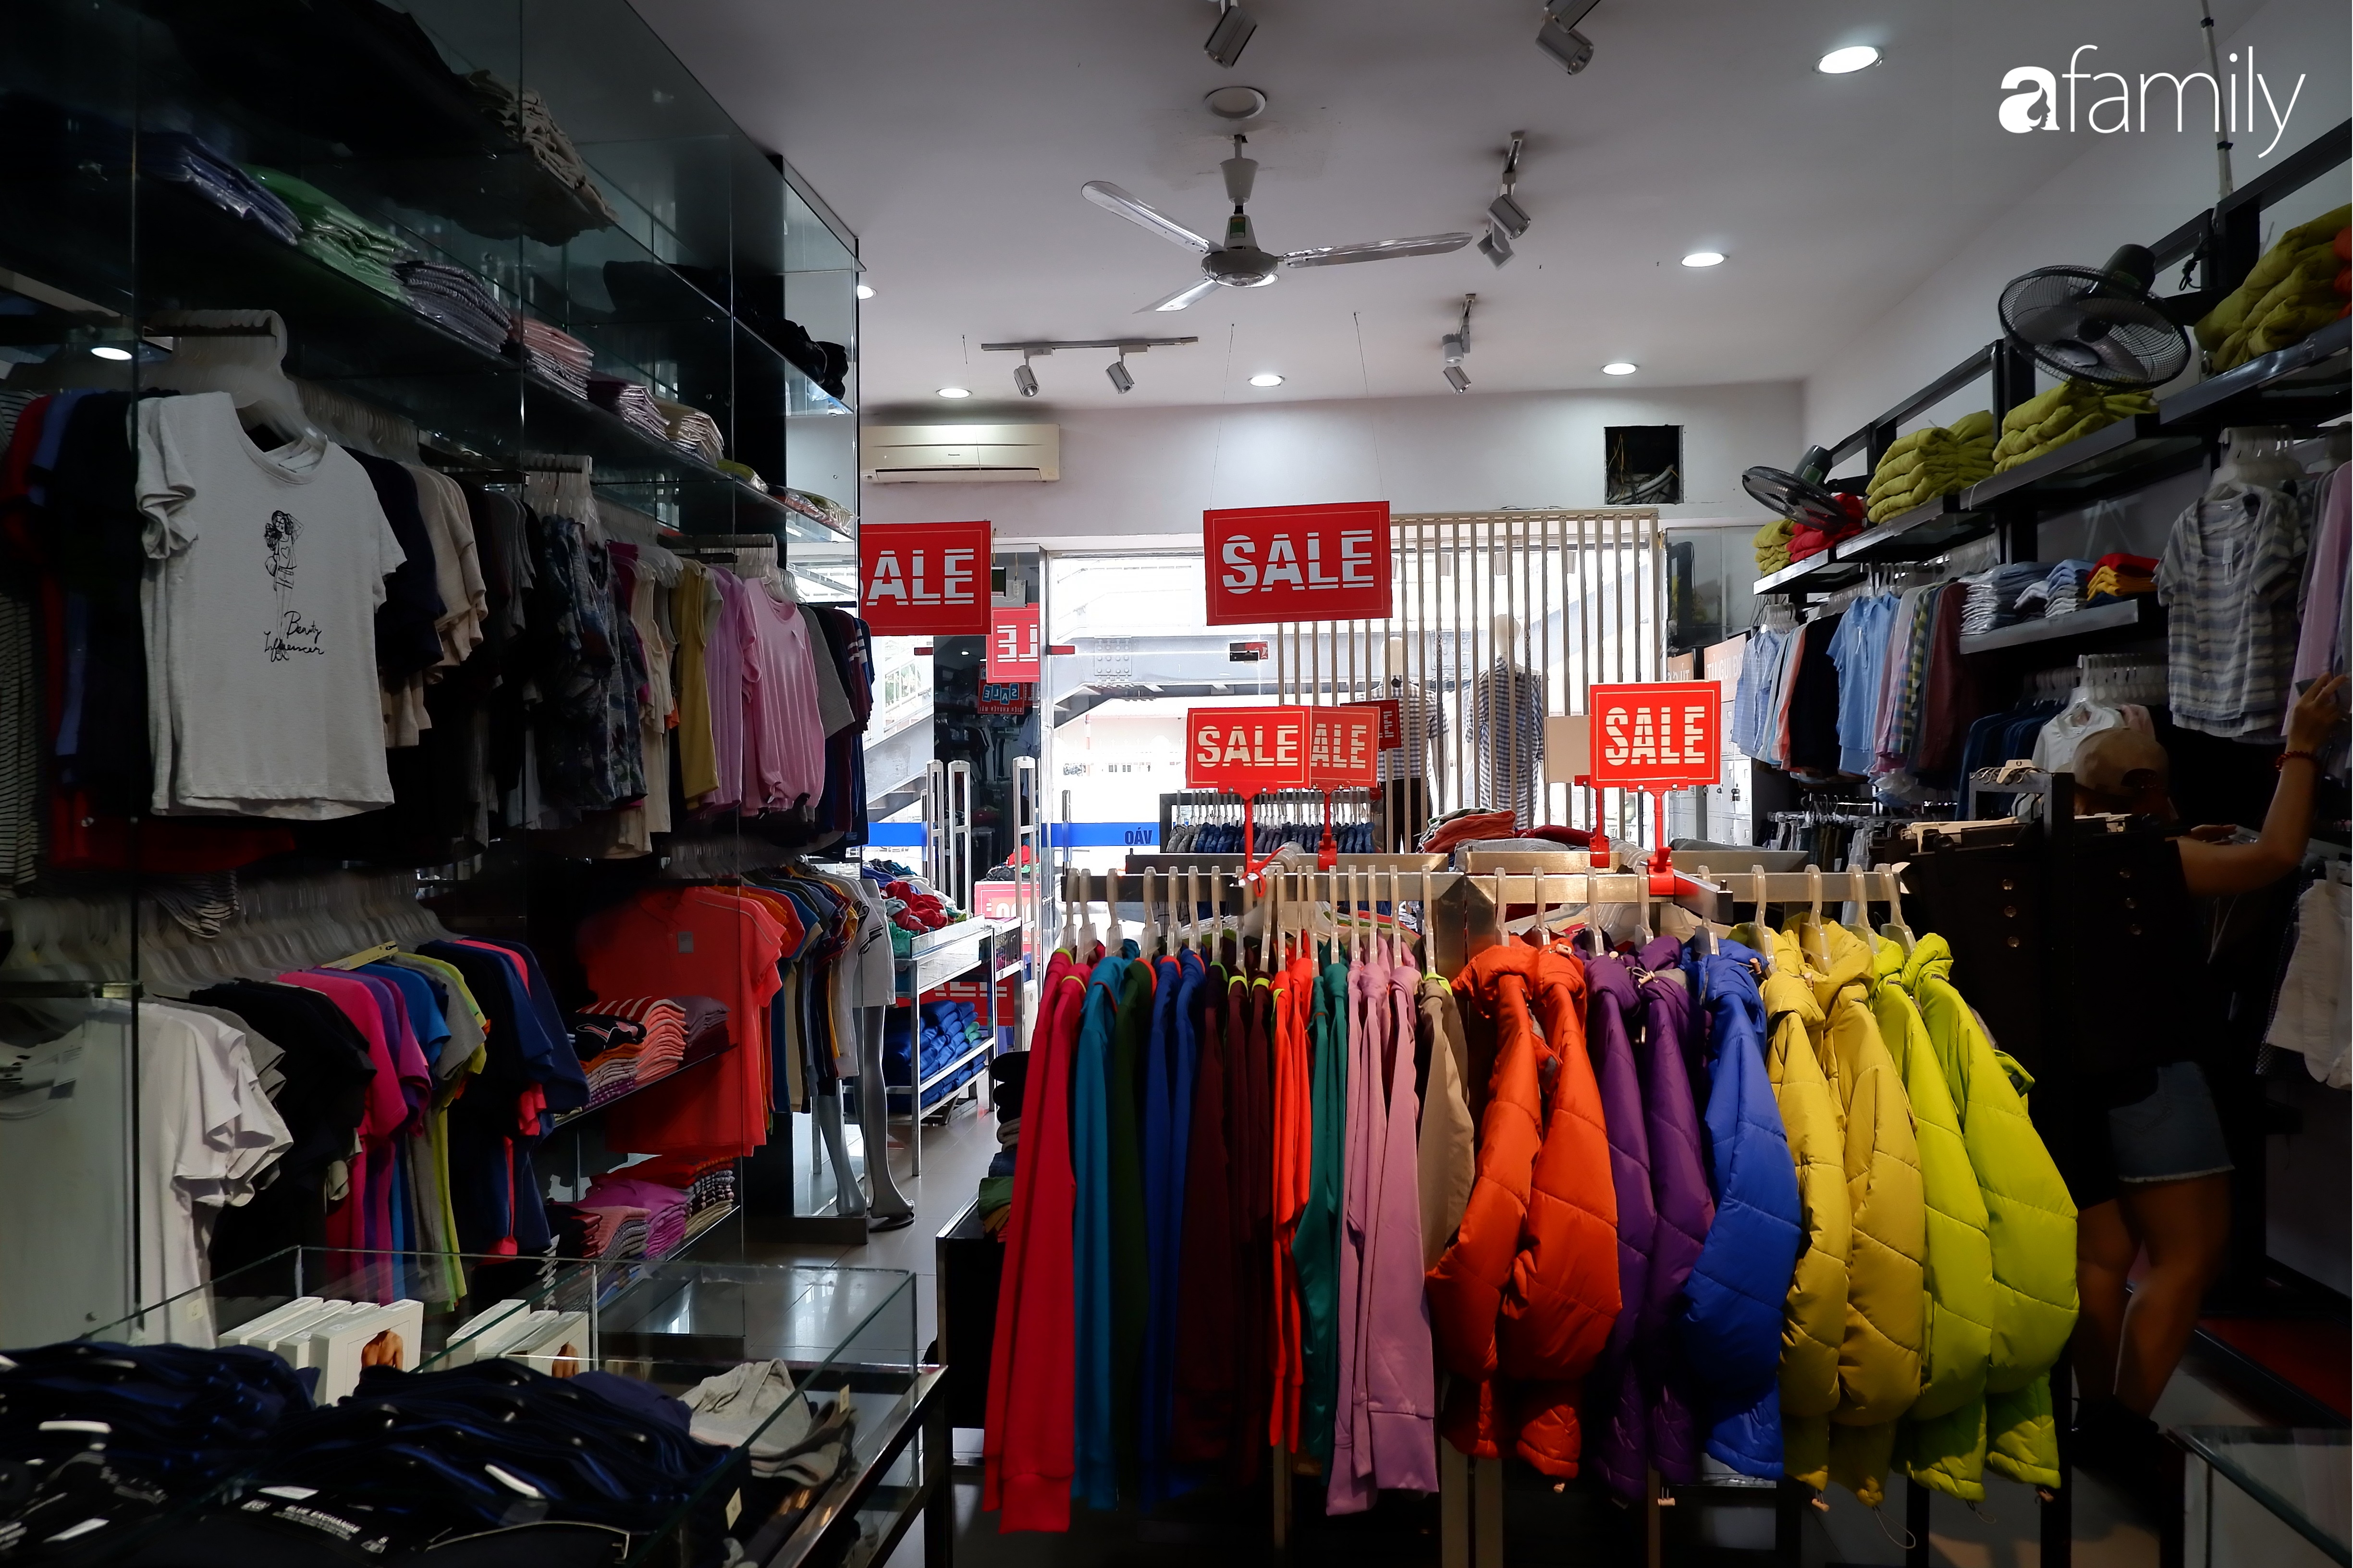 Hà Nội: Tranh thủ dịp nghỉ lễ chị em ghé ngay phố thời trang mua sắm vì đang có hàng loạt chương trình giảm giá cao nhất tới 80% từ thời trang cho tới mỹ phẩm - Ảnh 9.